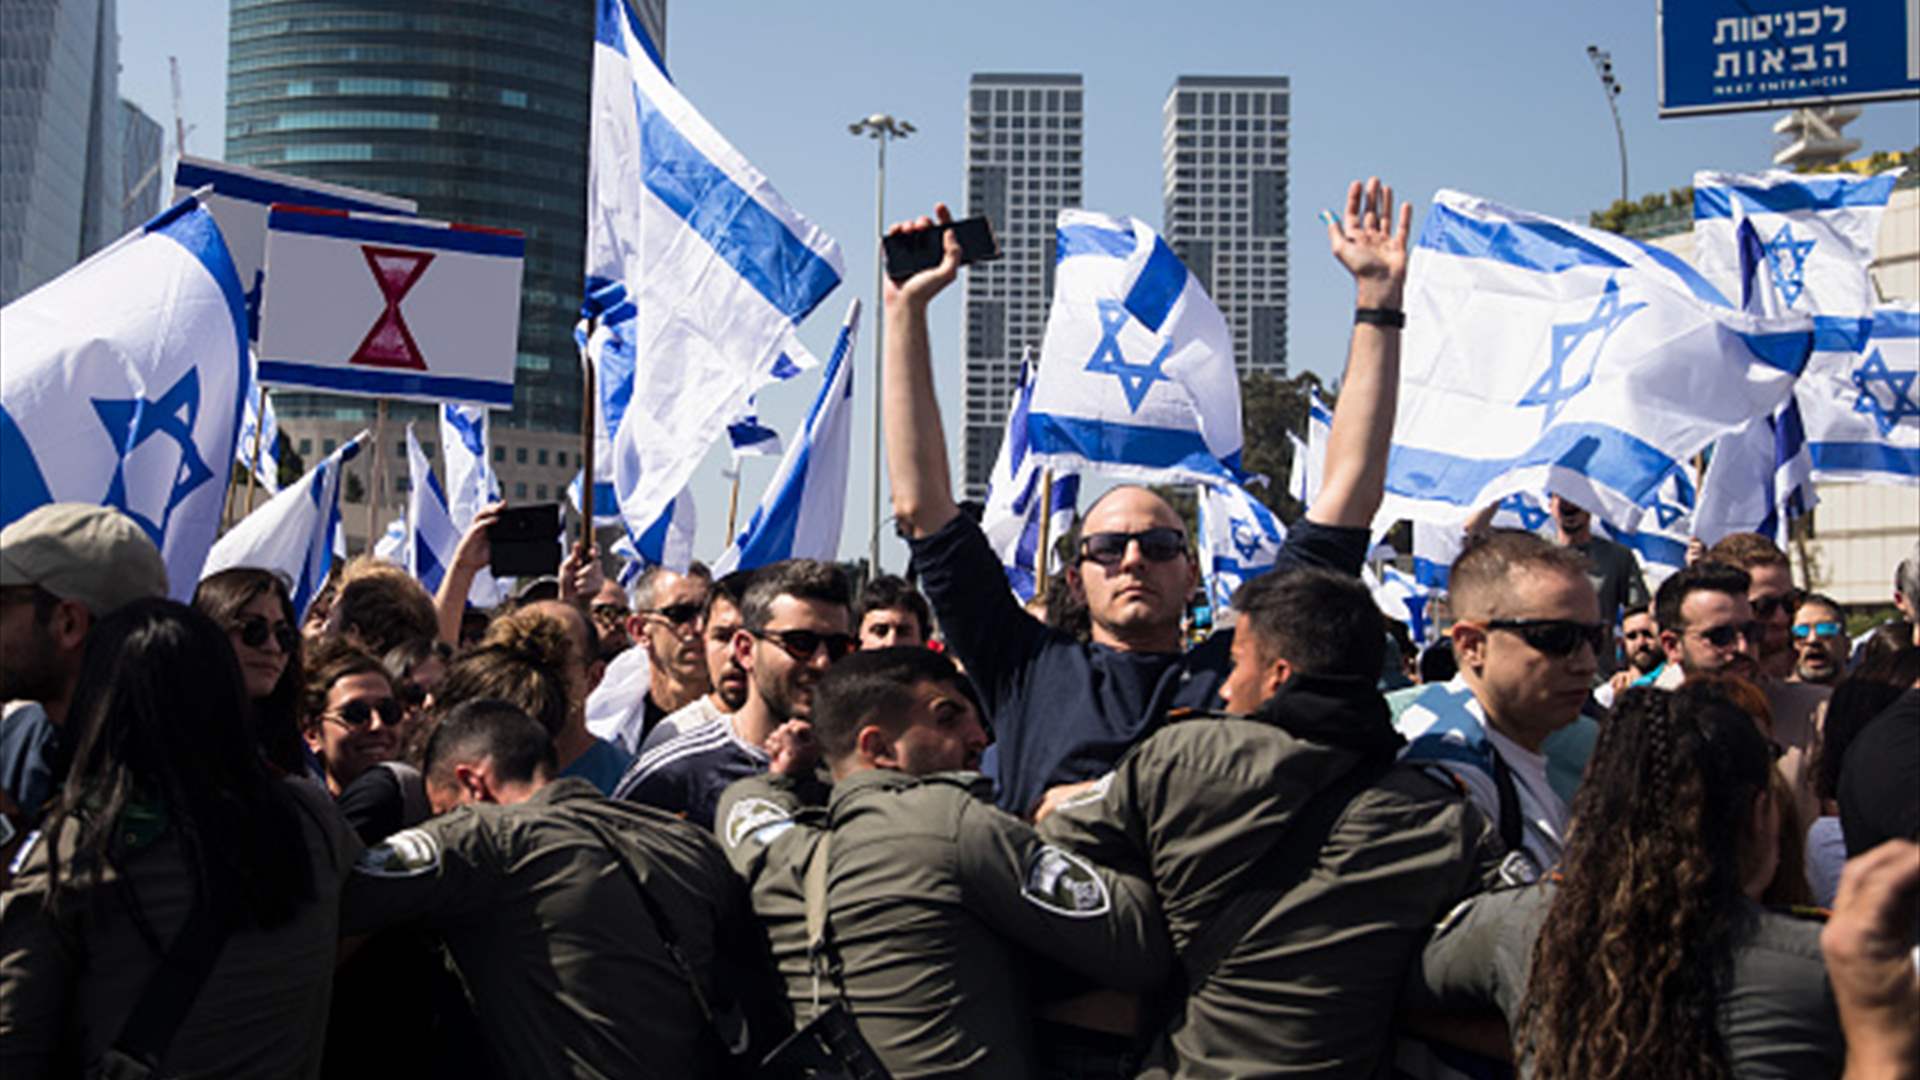 إسرائيليون يعودون للتظاهر في شوارع تل أبيب إحتجاجًا على خطة التعديلات القضائية  